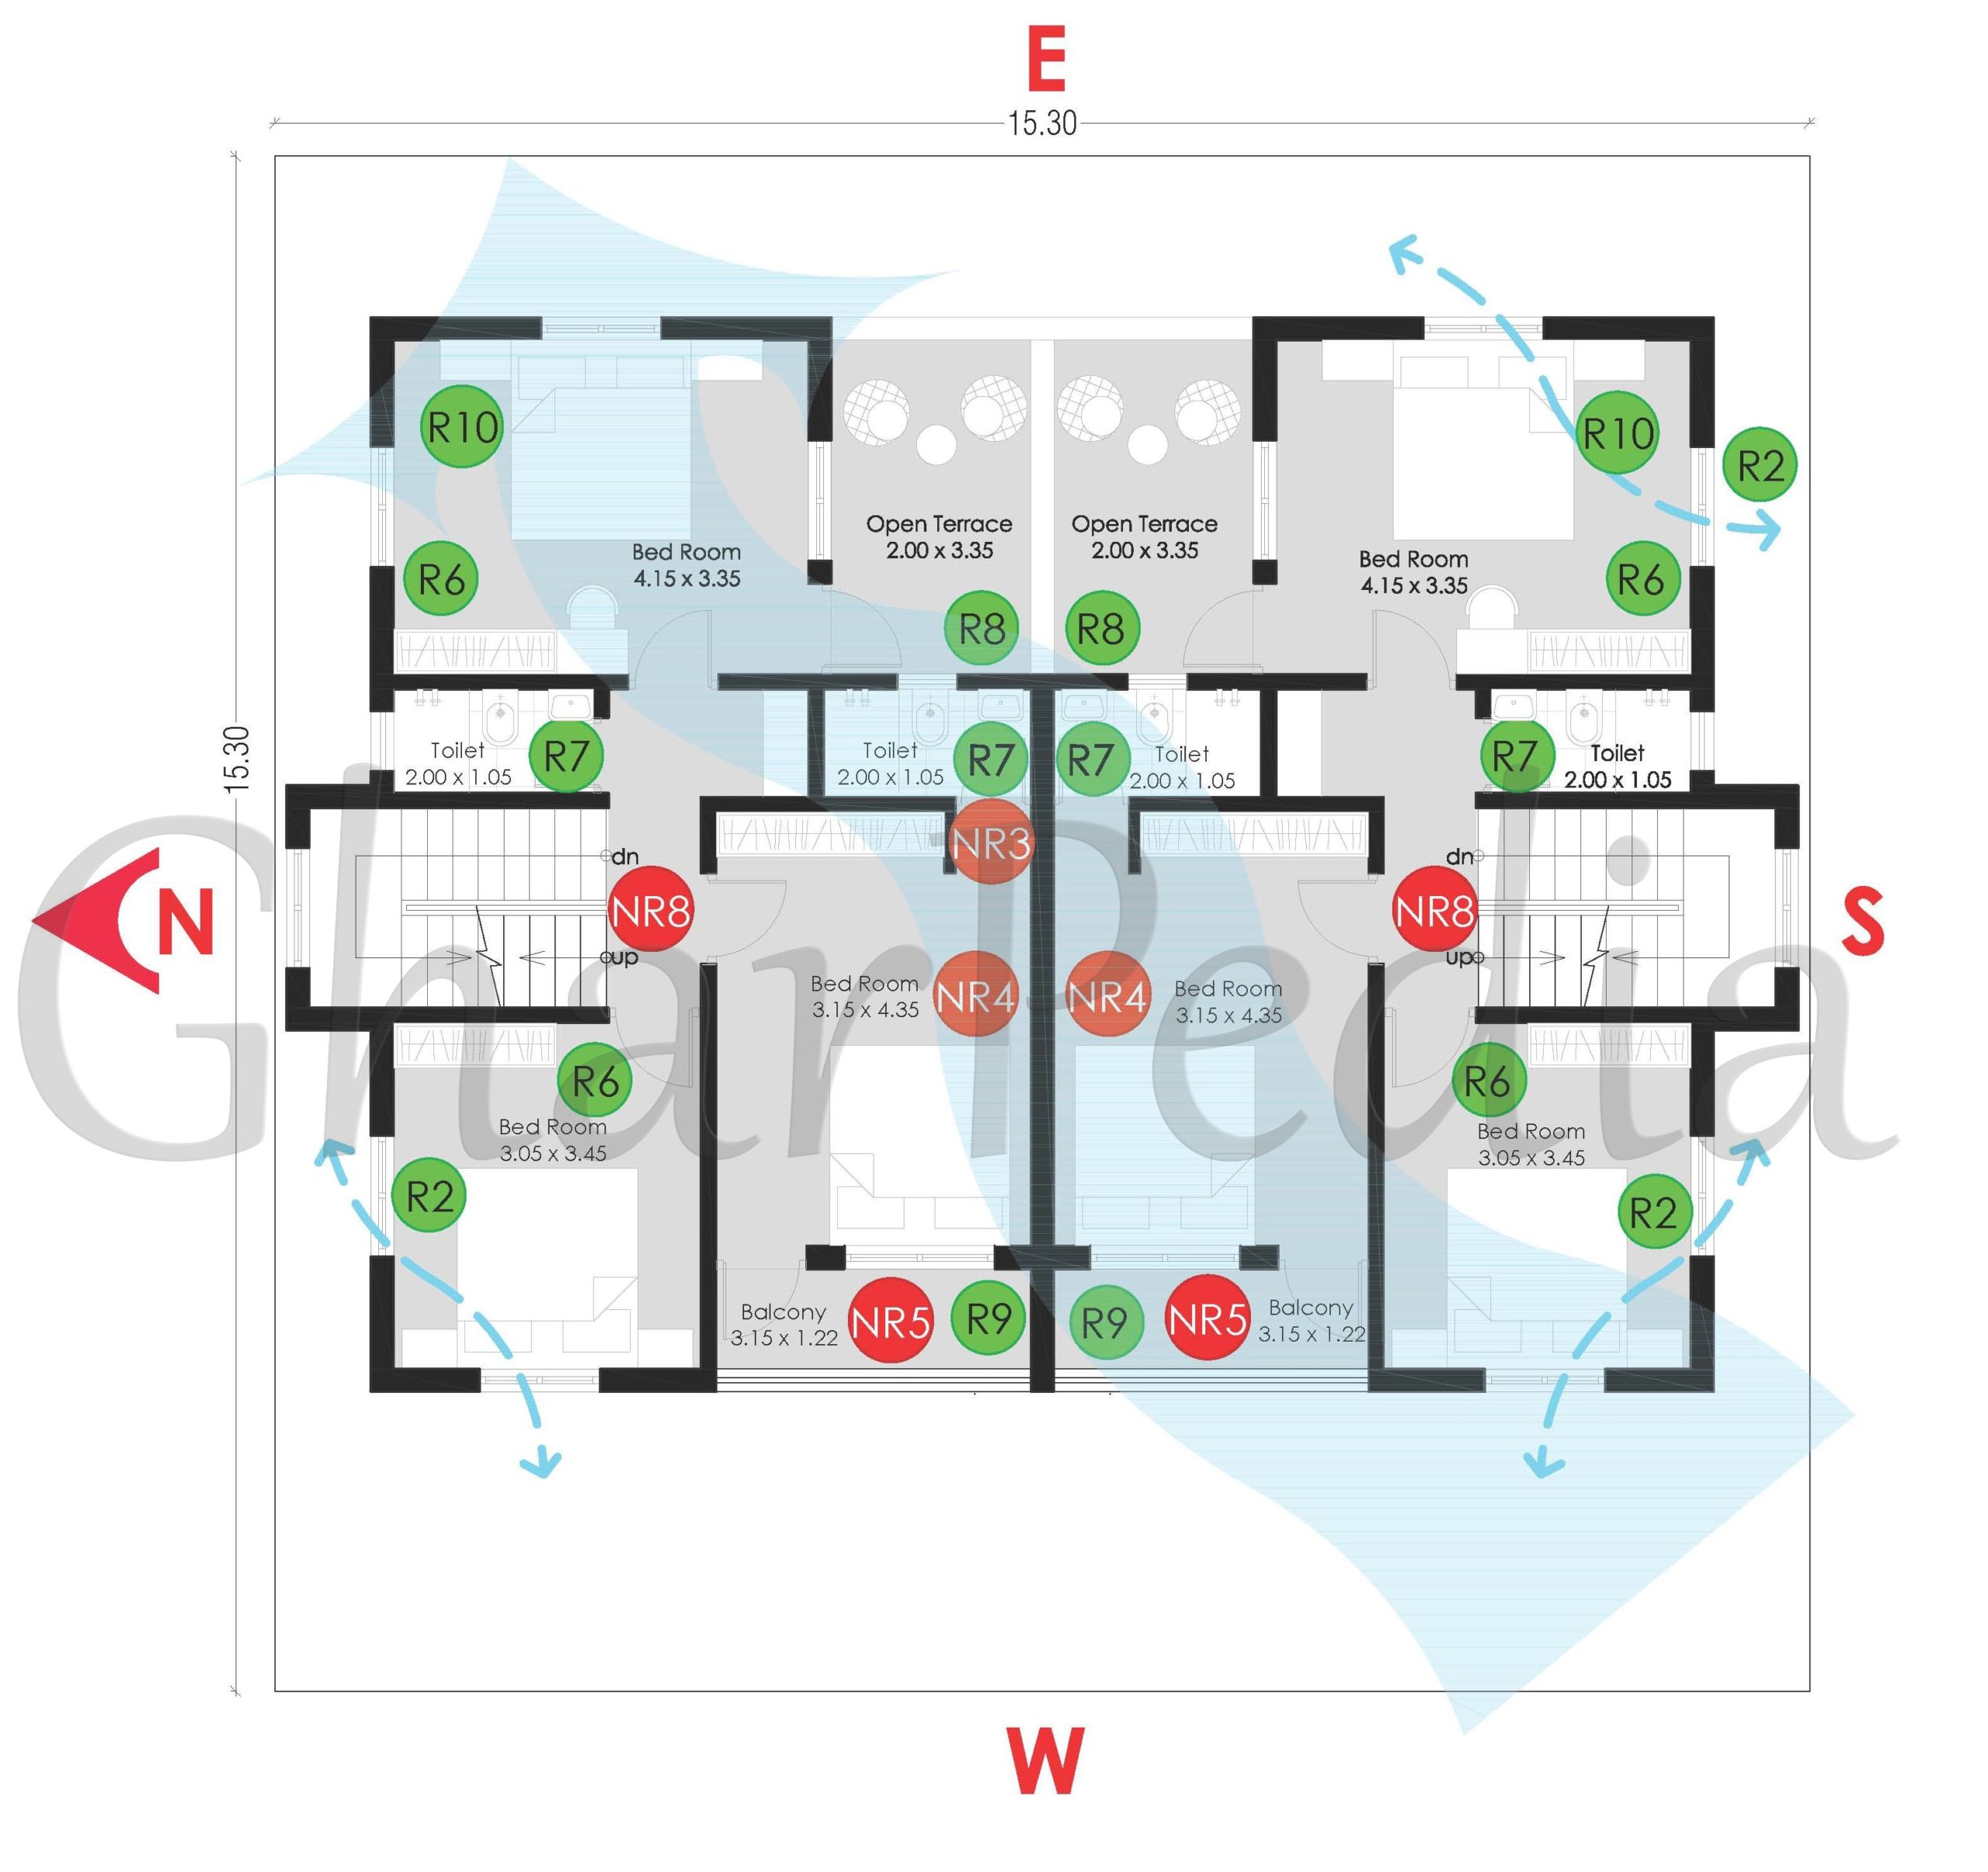 Plan Analysis of 3-BHK Duplex 234 sq.mt